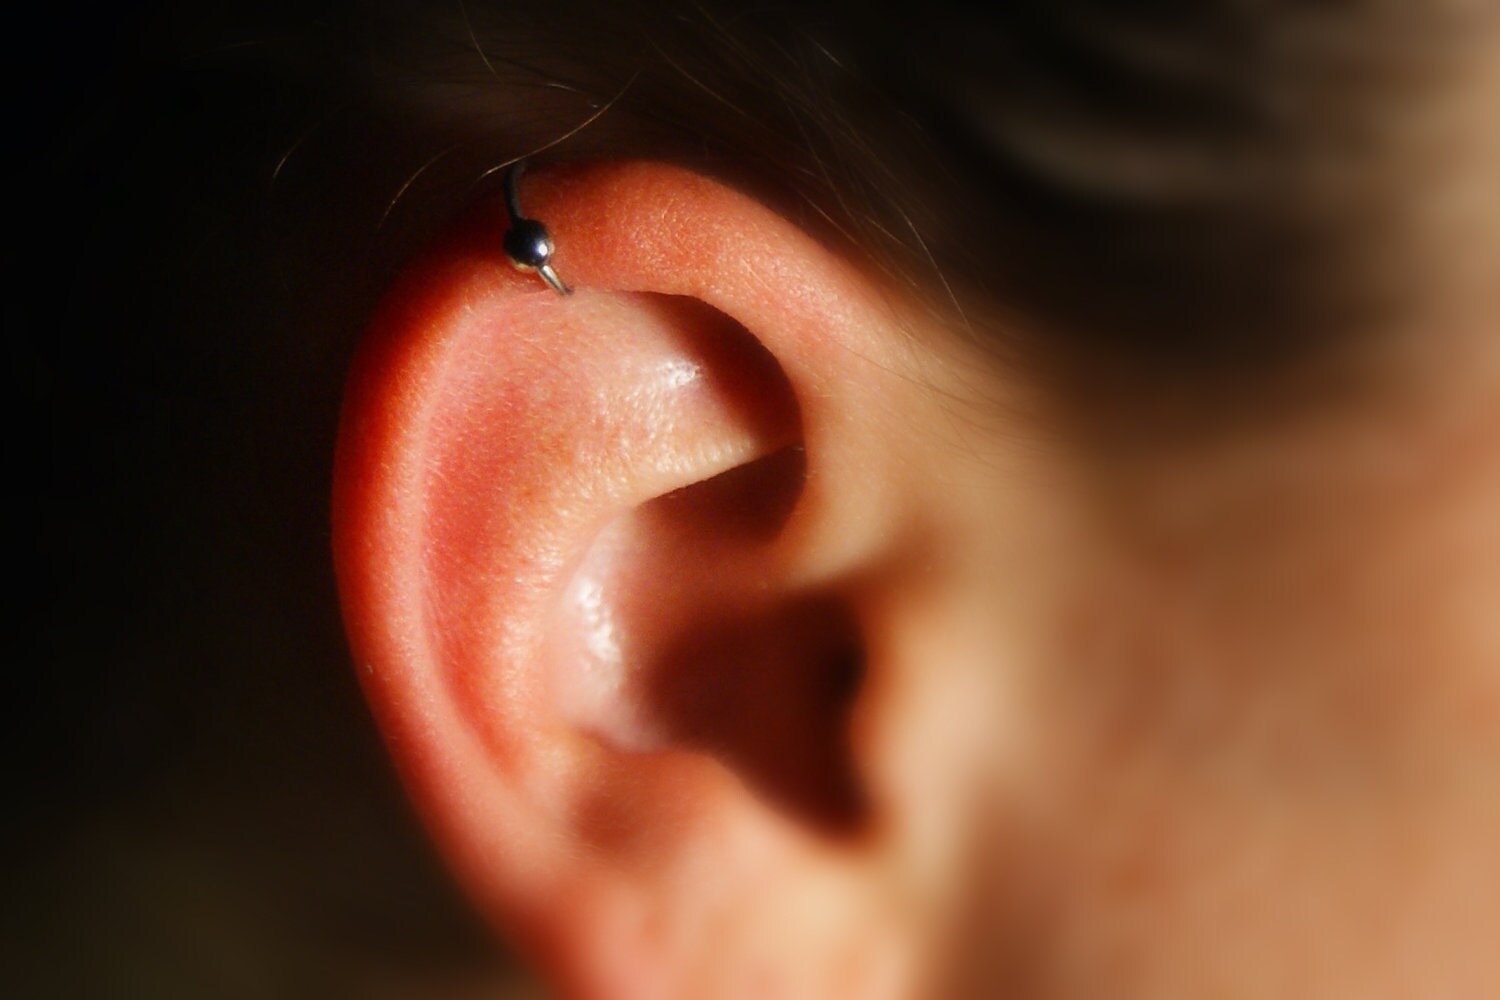 Cartilage Ear Cuff